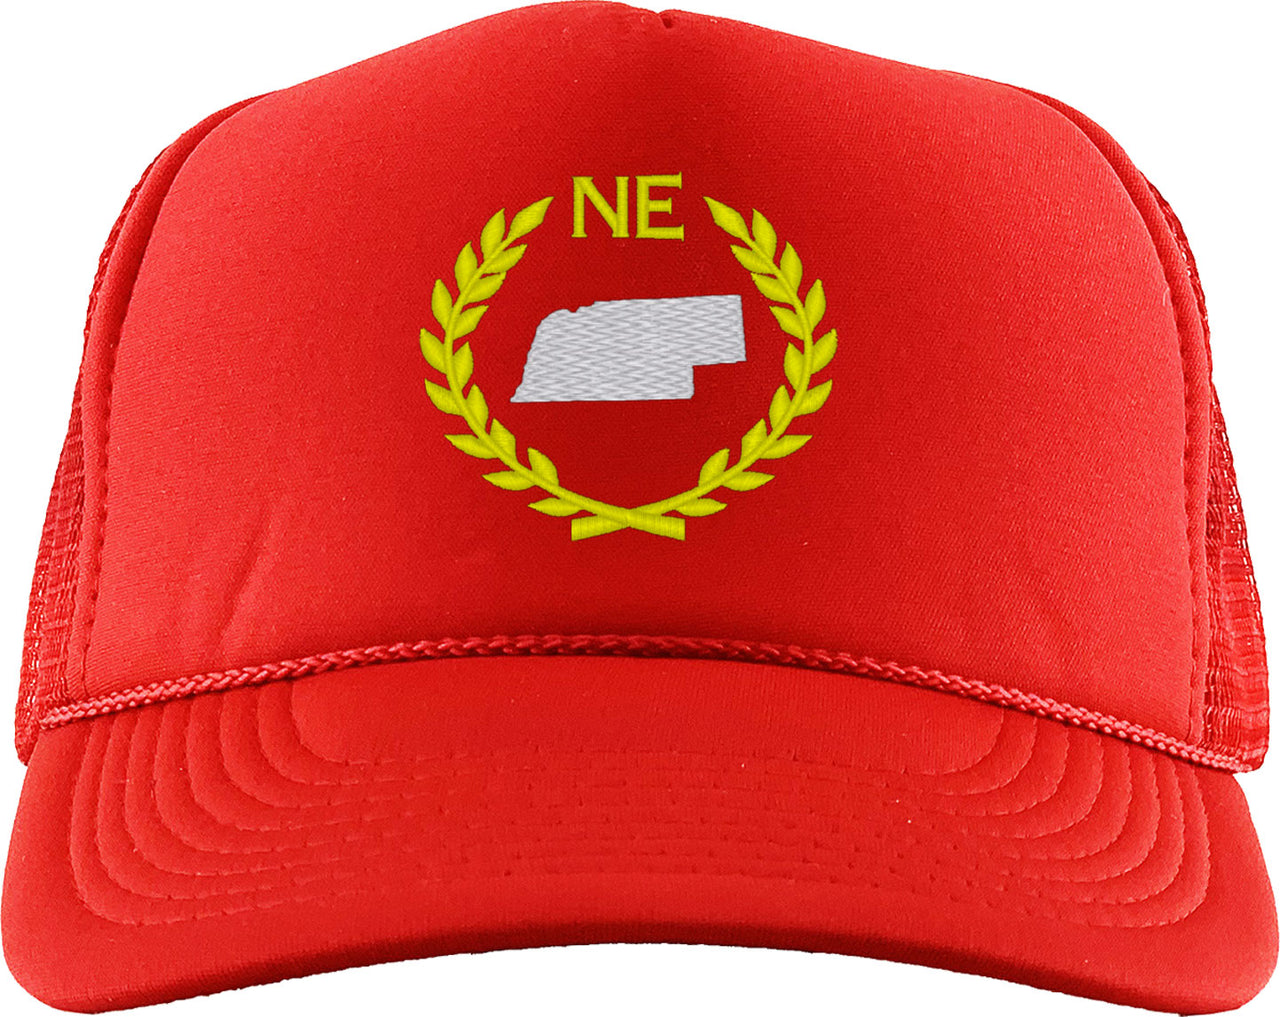 Nebraska State Foam Trucker Hat